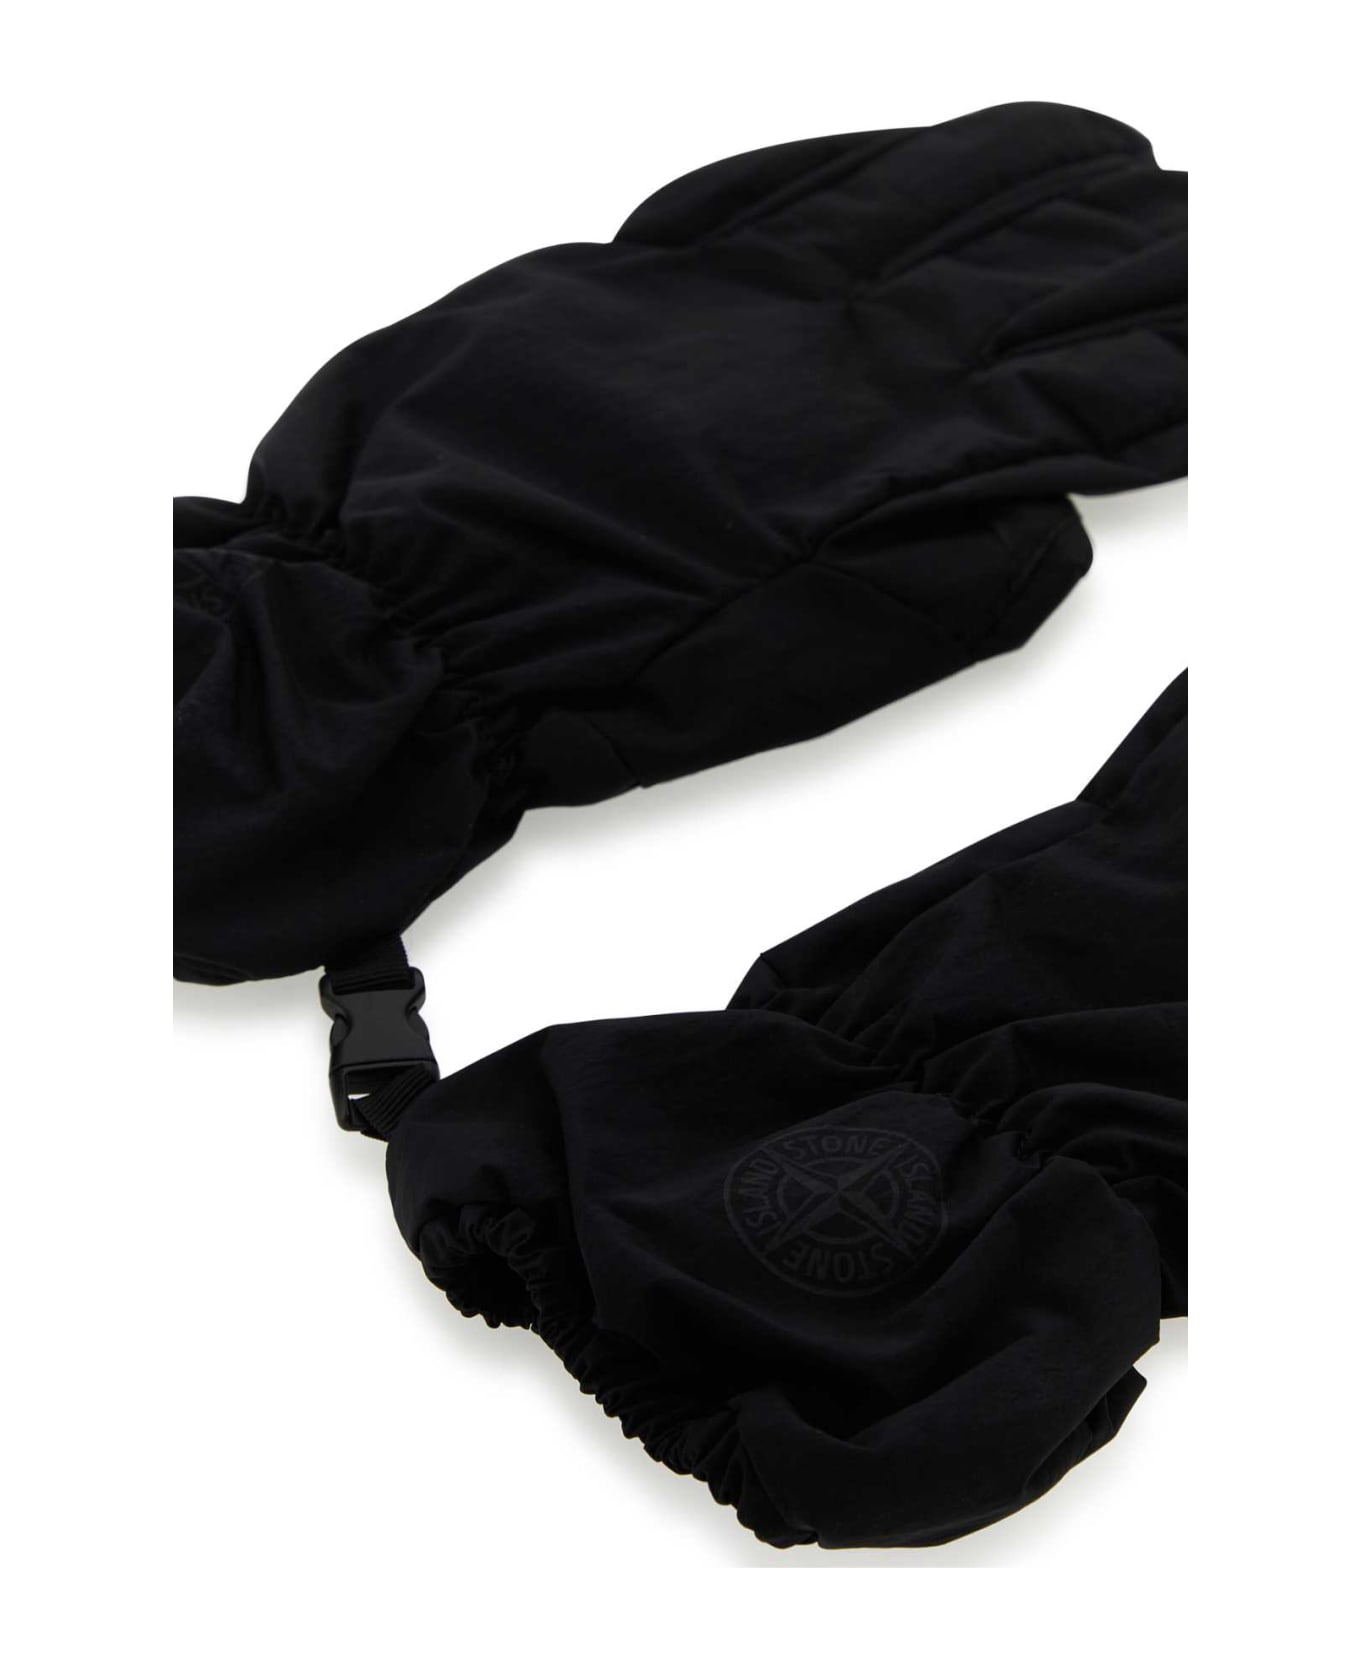 Stone Island Black Nylon Gloves - V0029